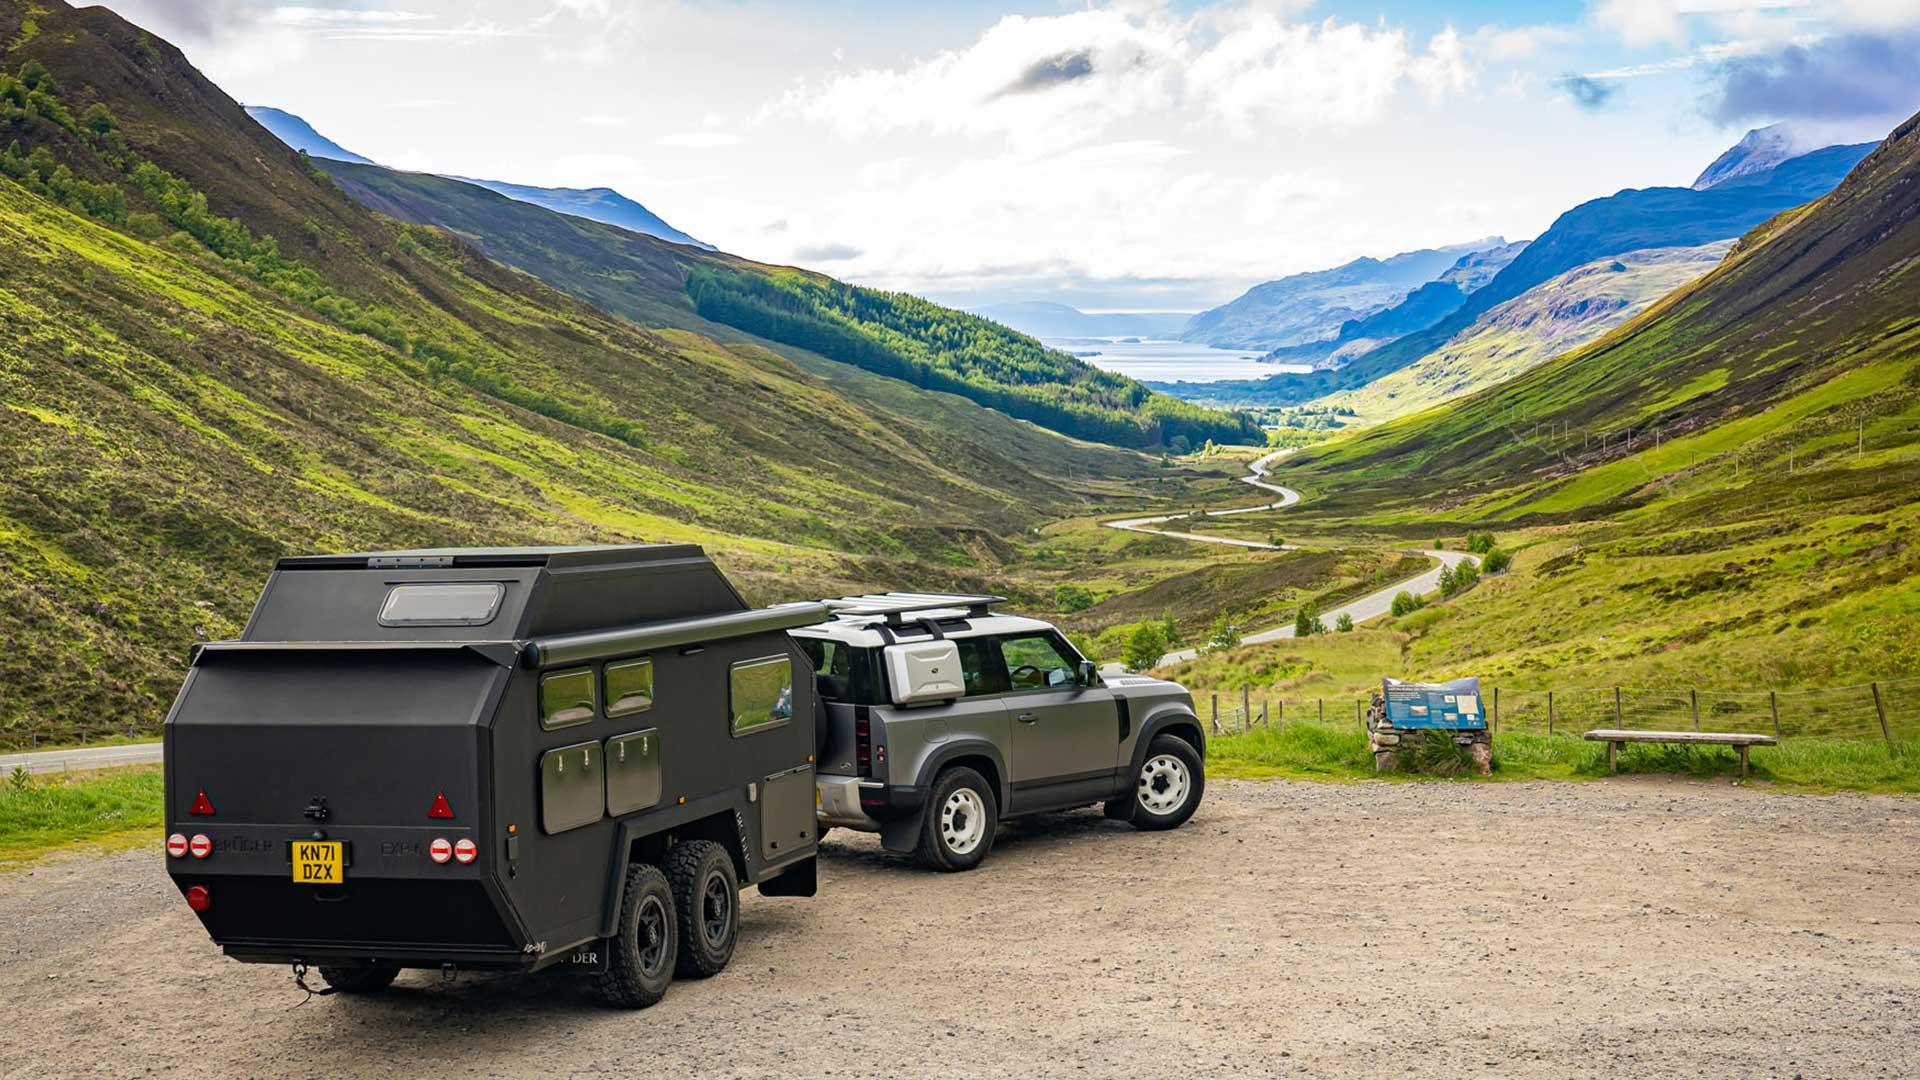 Land Rover Defender met Bruder EXP-6 caravan